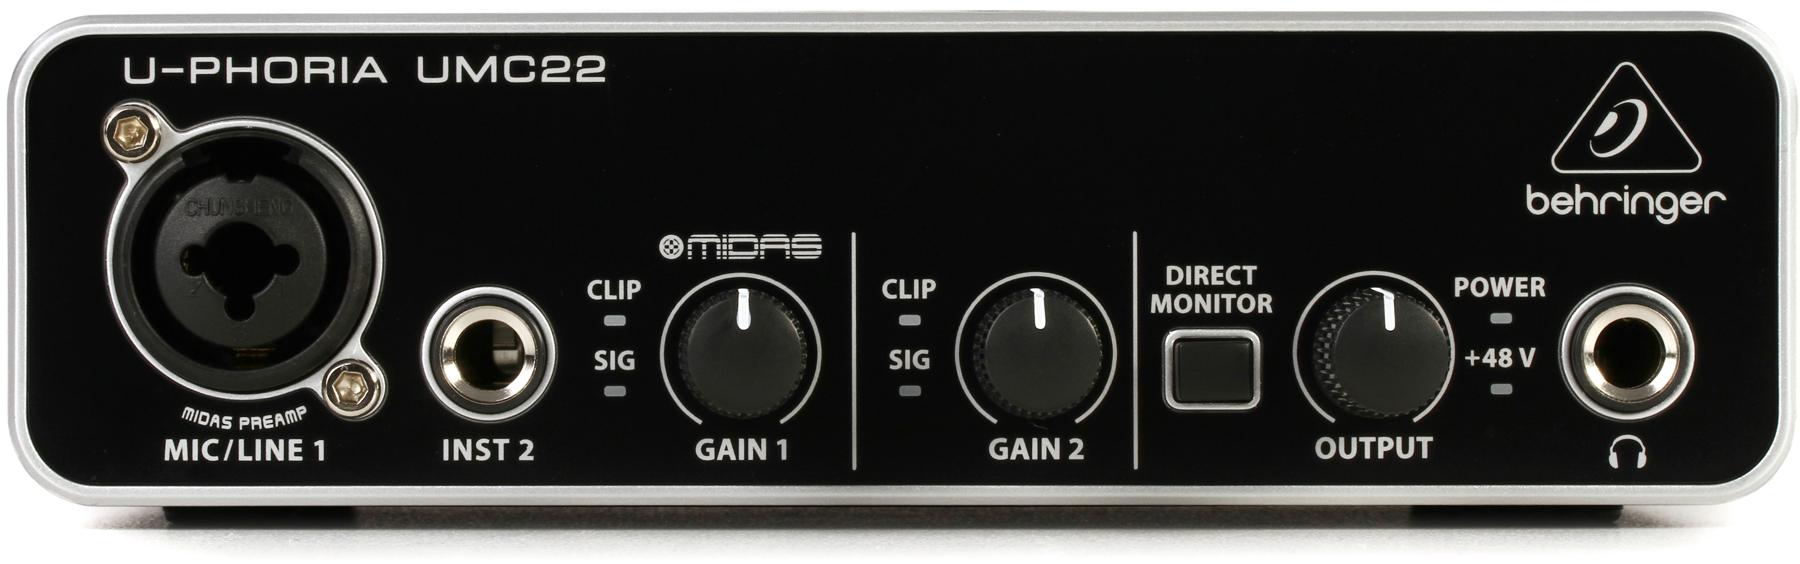 Behringer U-Phoria UMC22 USB Audio Interface-image